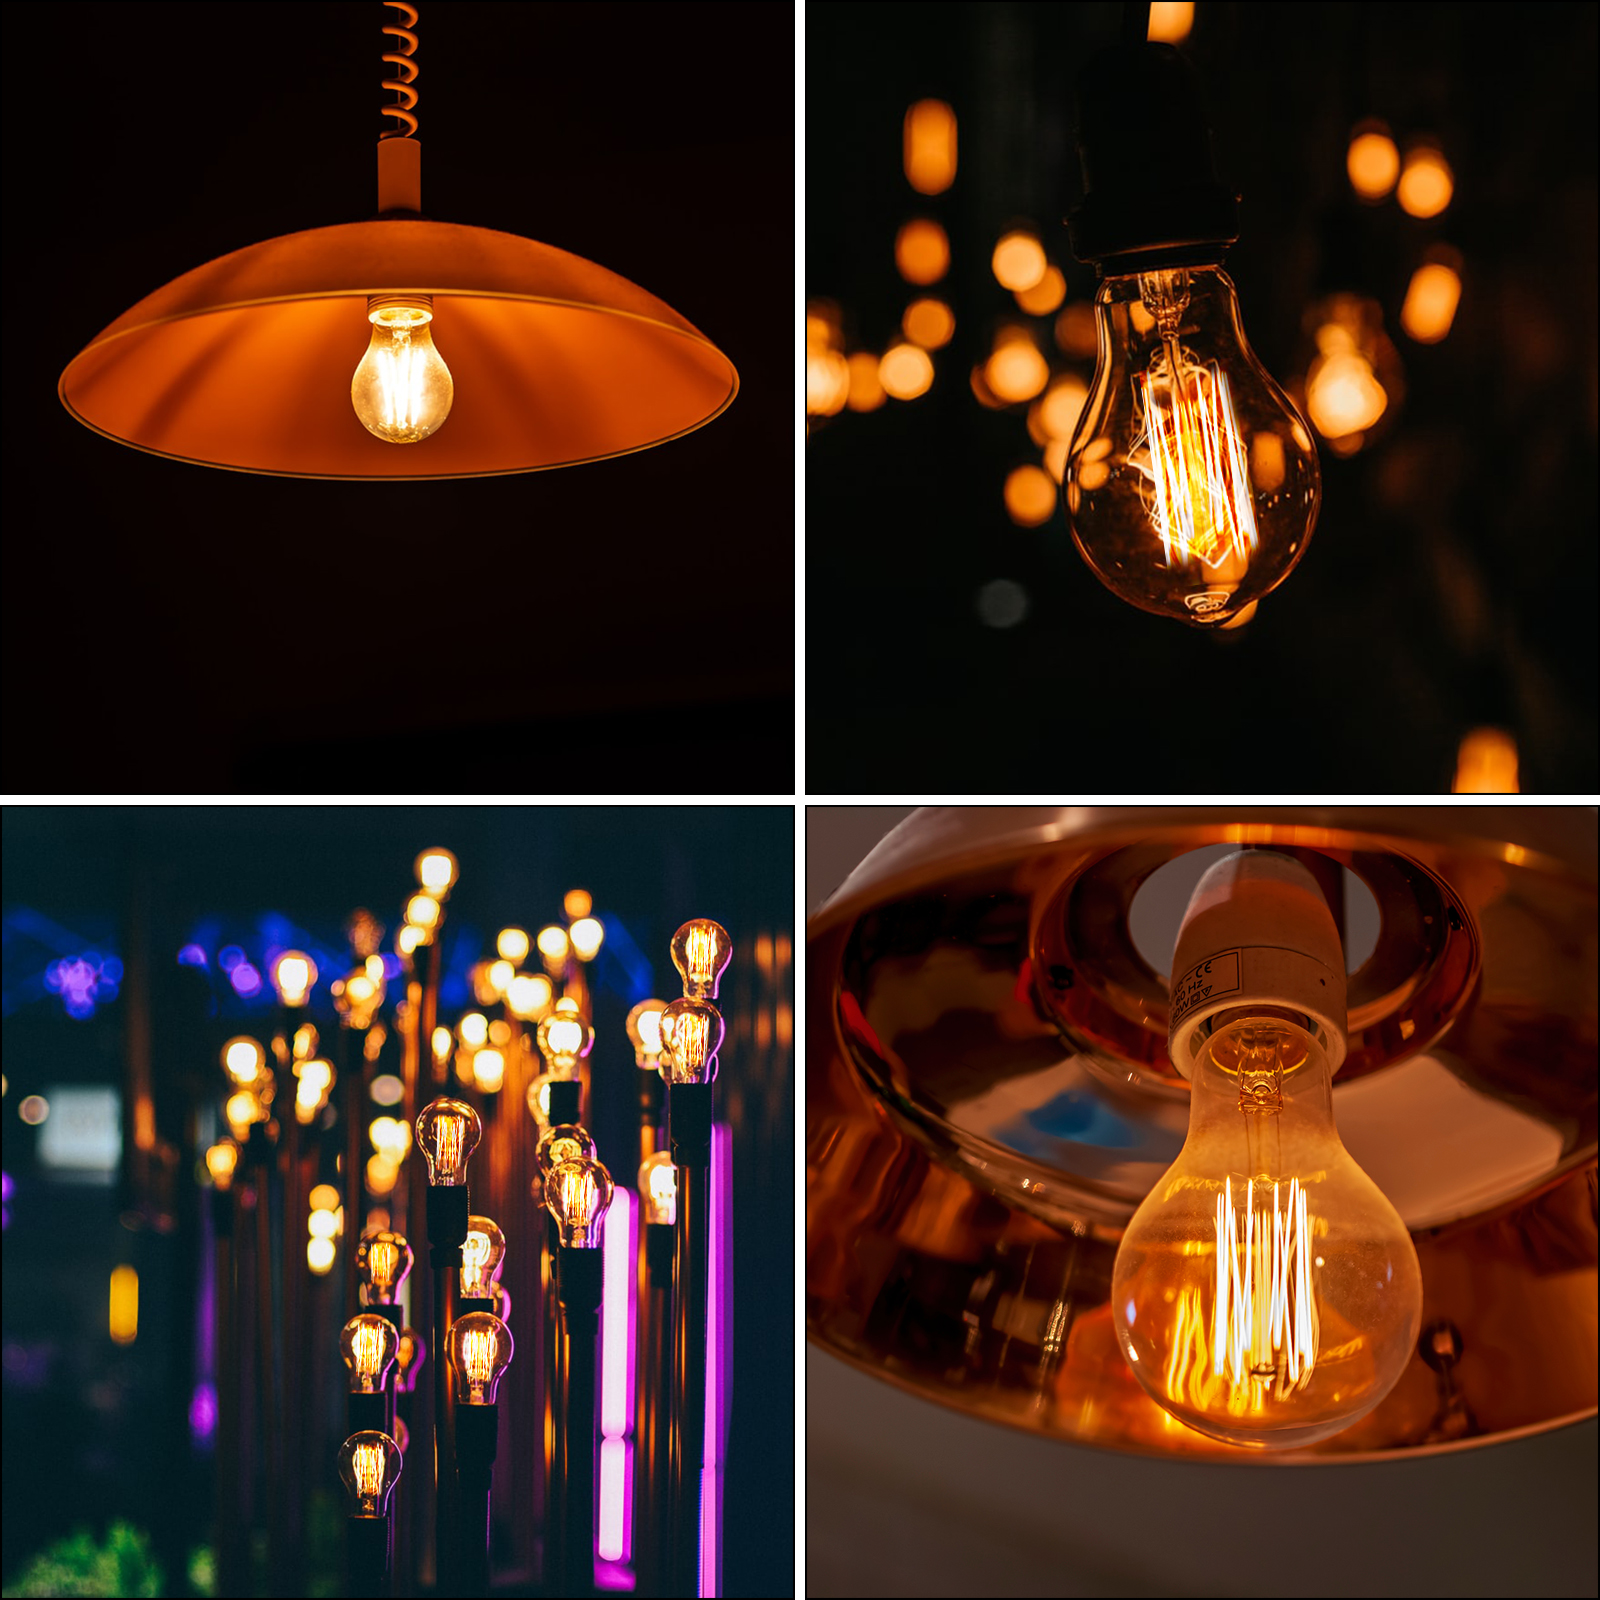 8W A60 E27 LED Vintage Light Bulbs